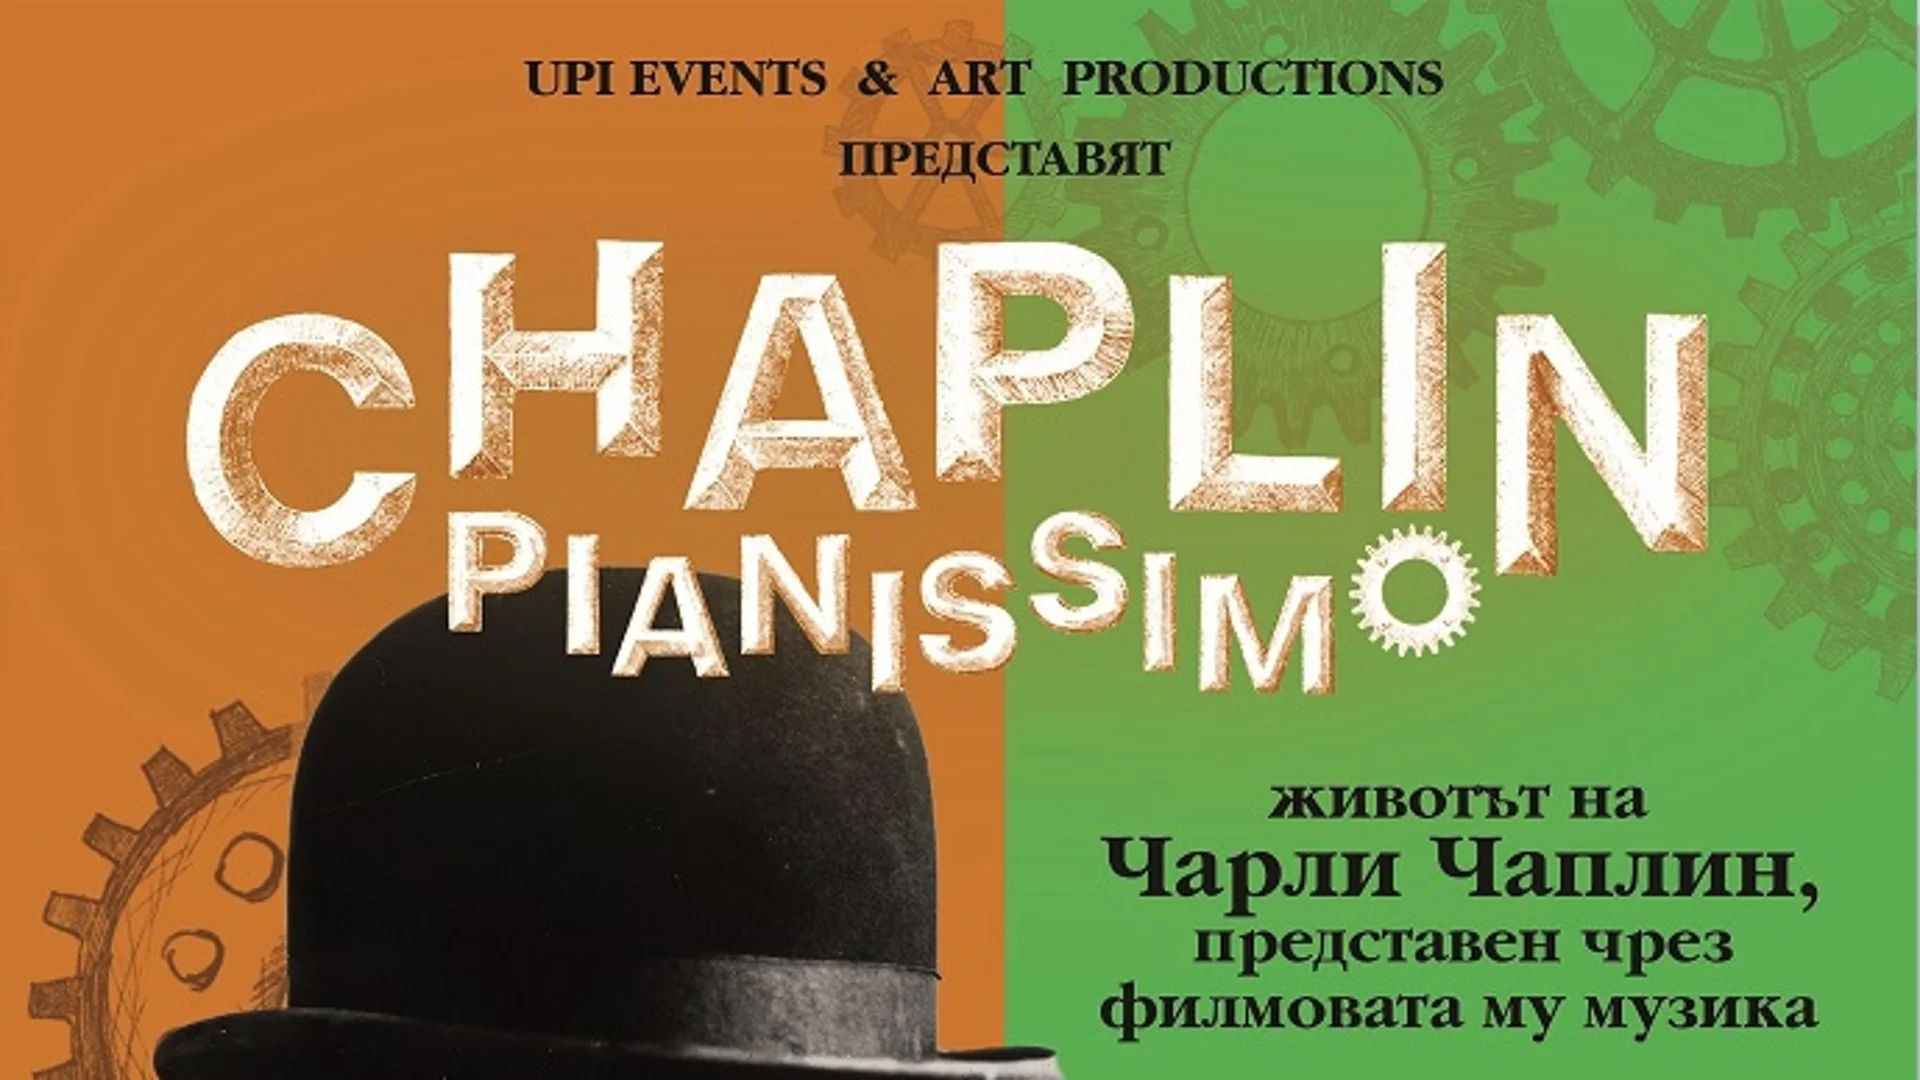 Синът на Чарли Чаплин представя лично "Чаплин пианисимо" в България